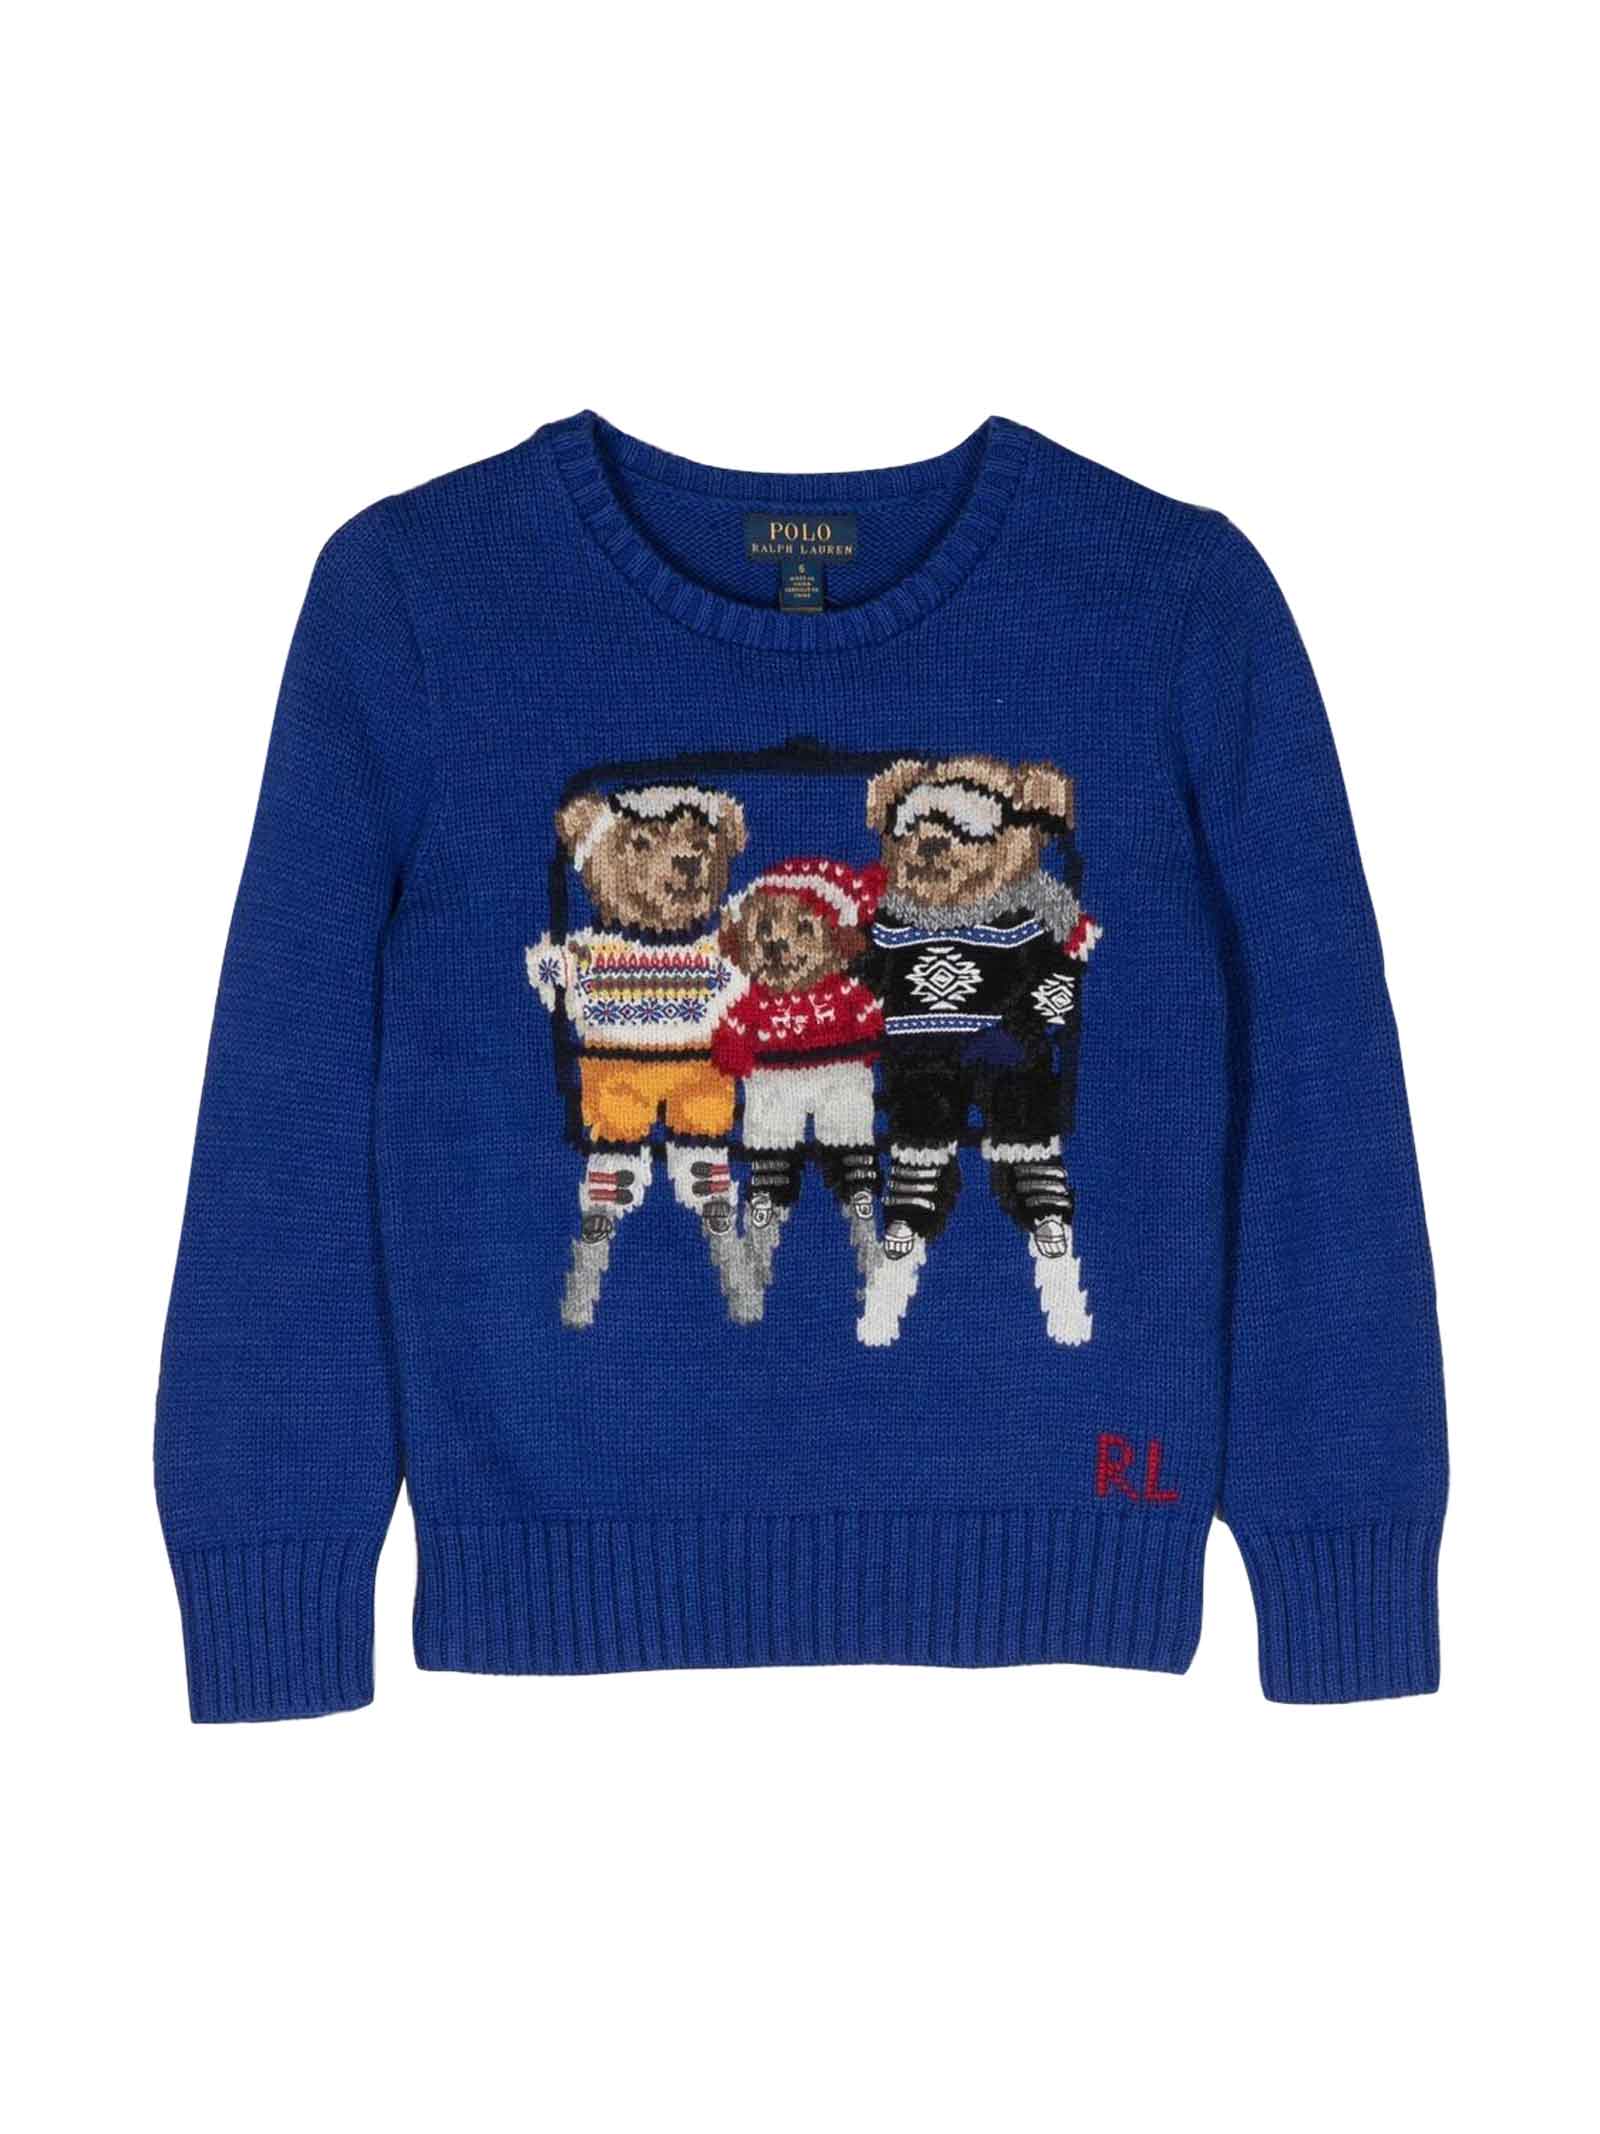 Ralph Lauren Blue Sweater Boy.